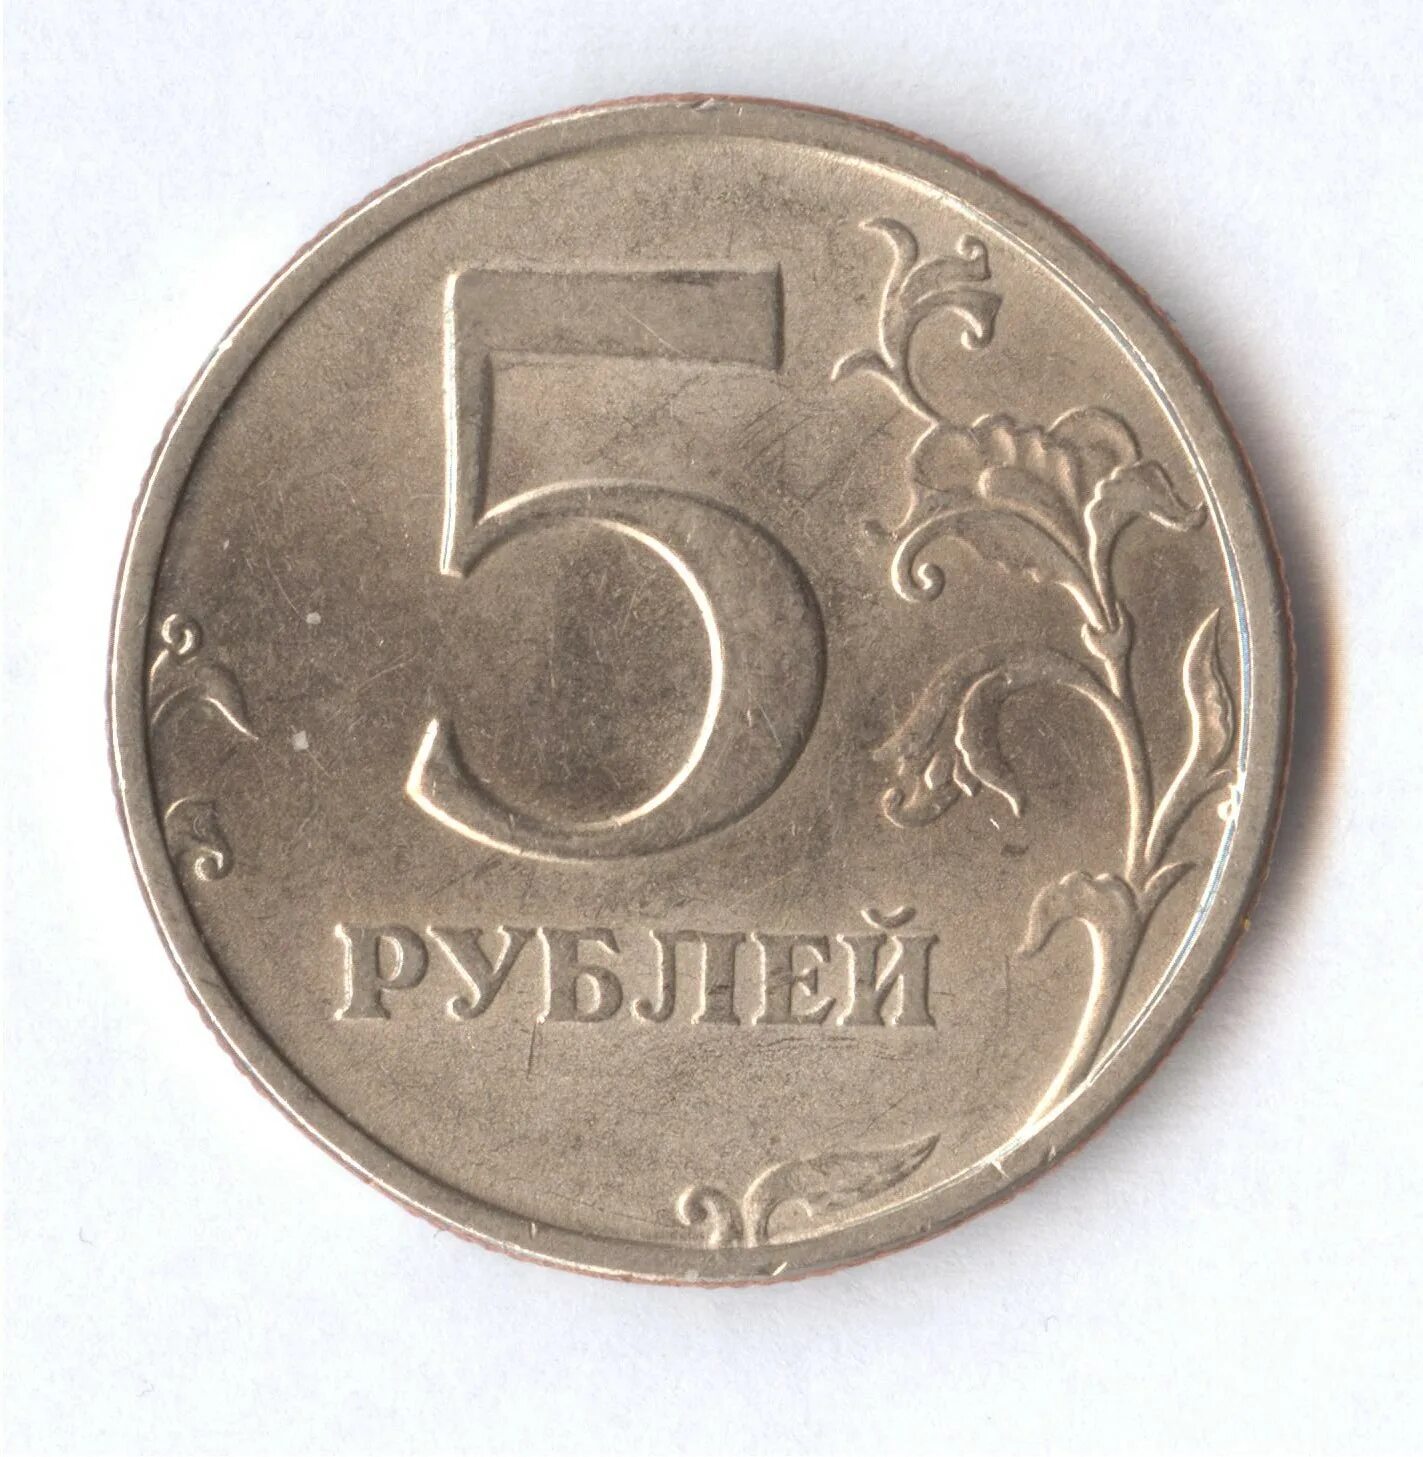 5 рублей плюс 5 рублей. 5 Рублей 1998 СПМД. Дорогие монеты 5 рублей 1998. Монеты СПМД 1998 год 5 рублей. Нумизматика 5 рублей 1998.